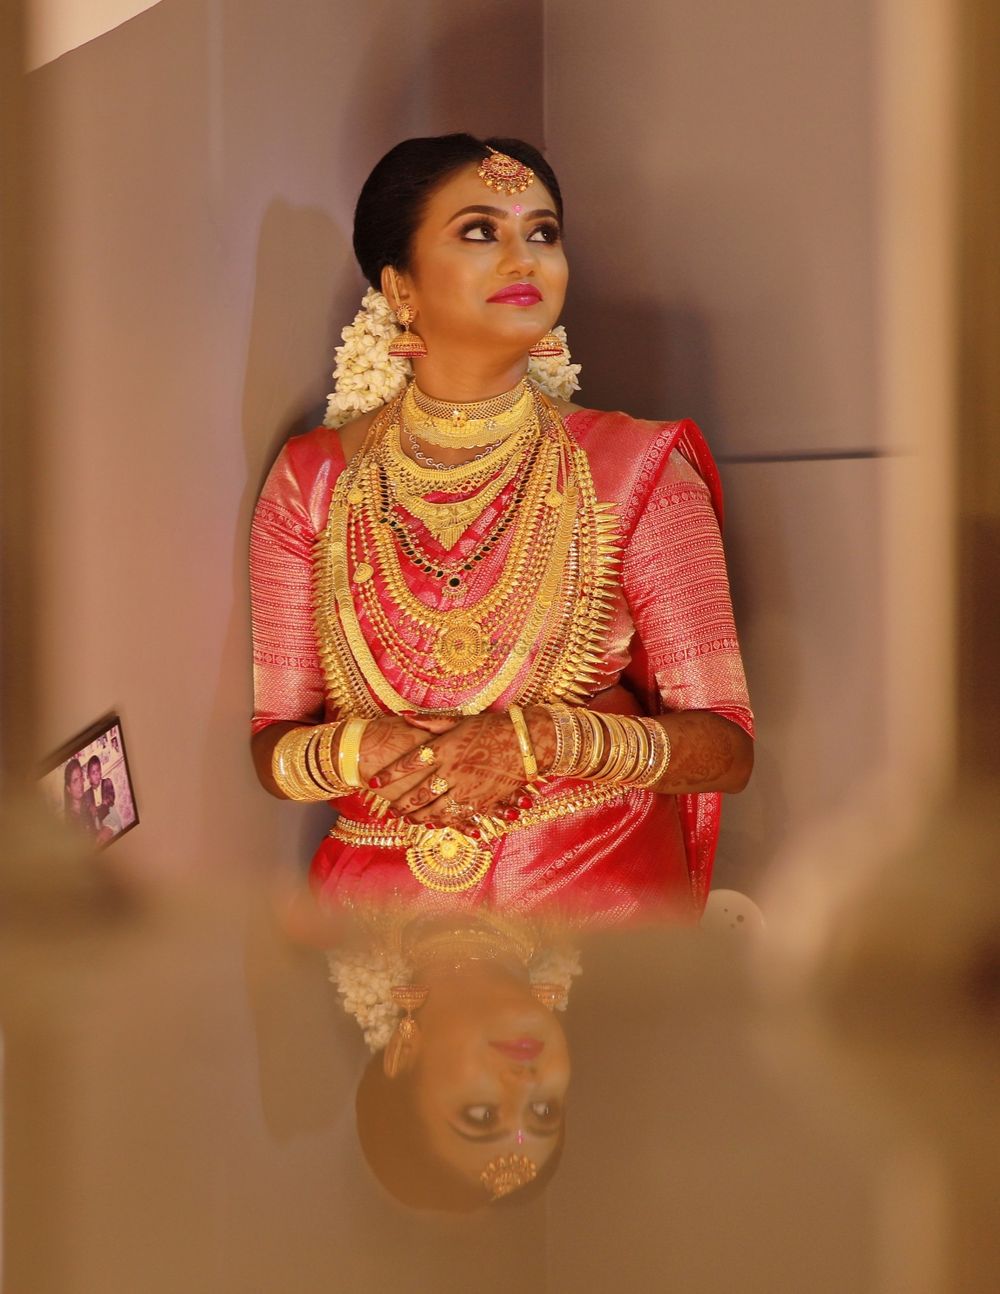 Photo From Bride Shikha - By Tony Makeup Artist